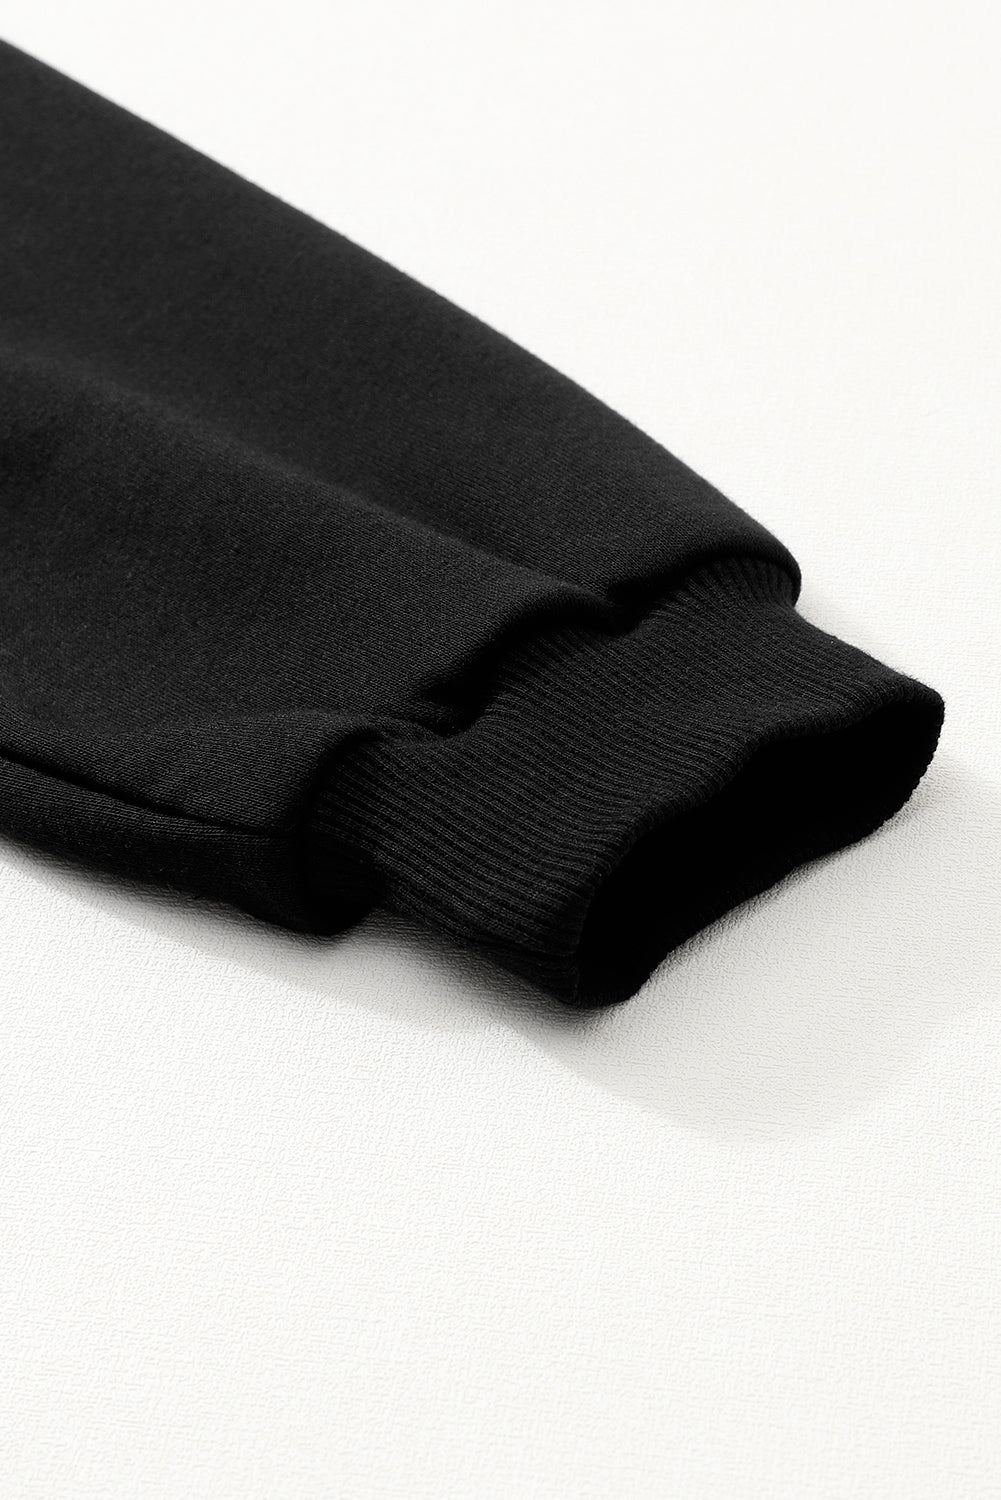 Črna enobarvna mini obleka z napihnjenimi rokavi in ​​naborki